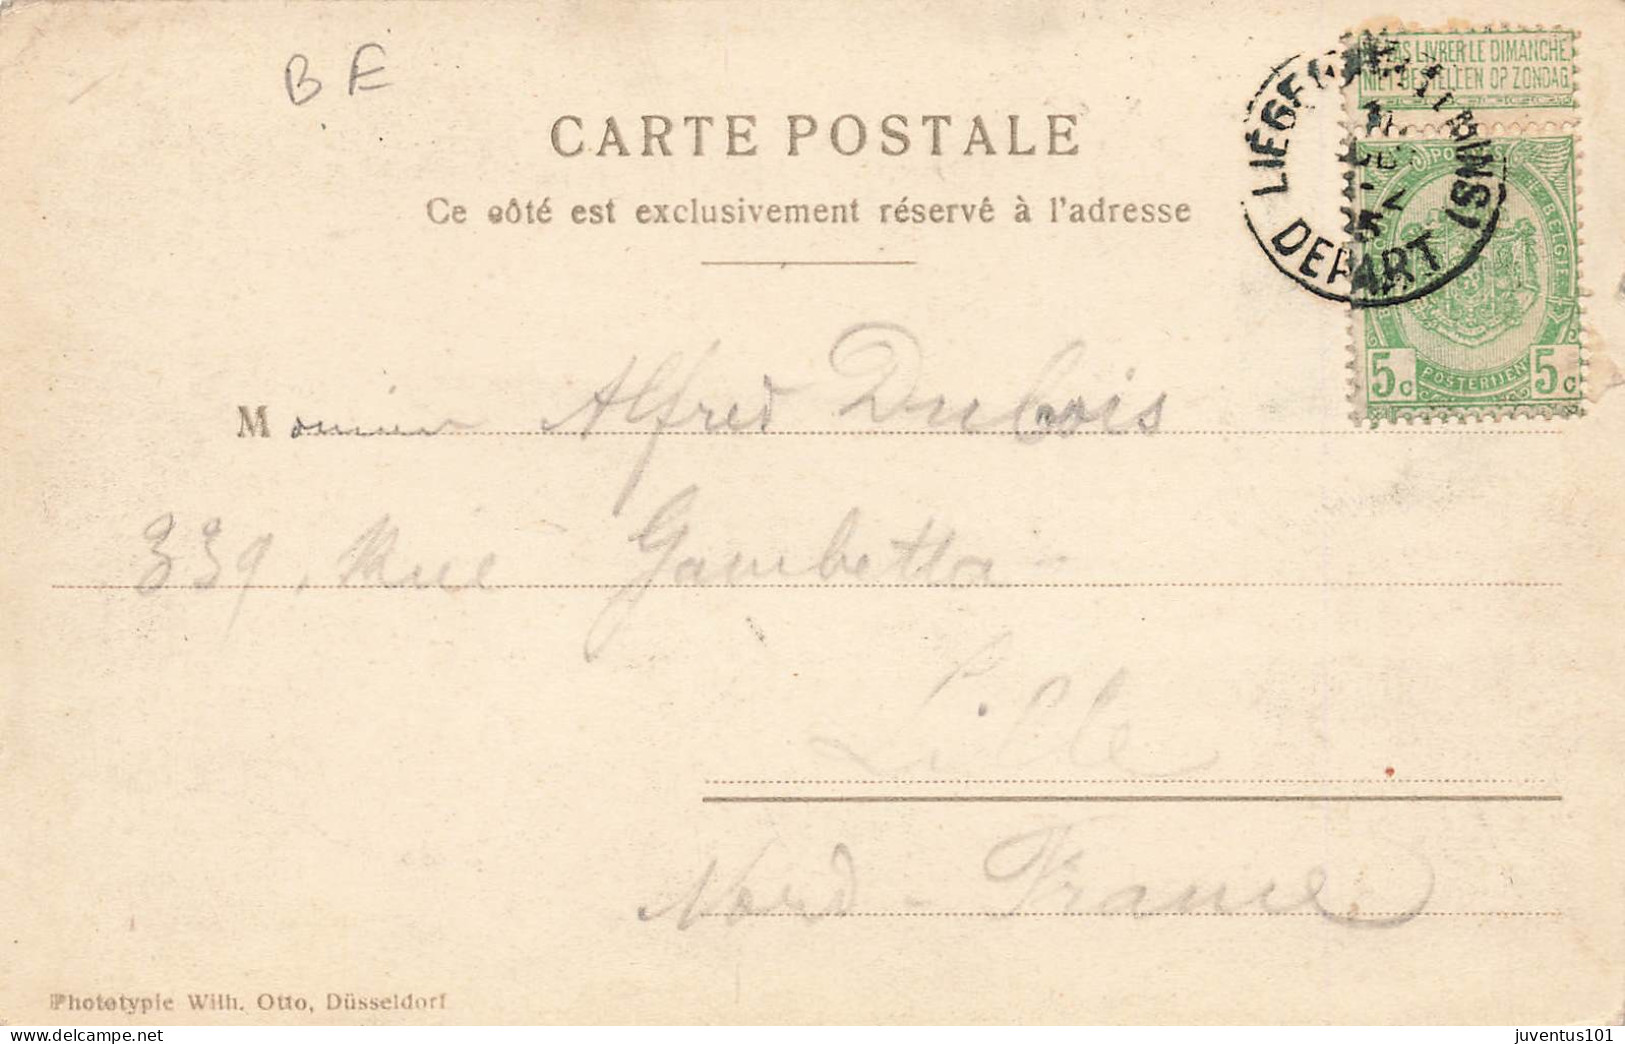 CPA Exposition Universelle De Liège 1905-Palais Des Beaux Arts-Timbre     L2916 - Liege